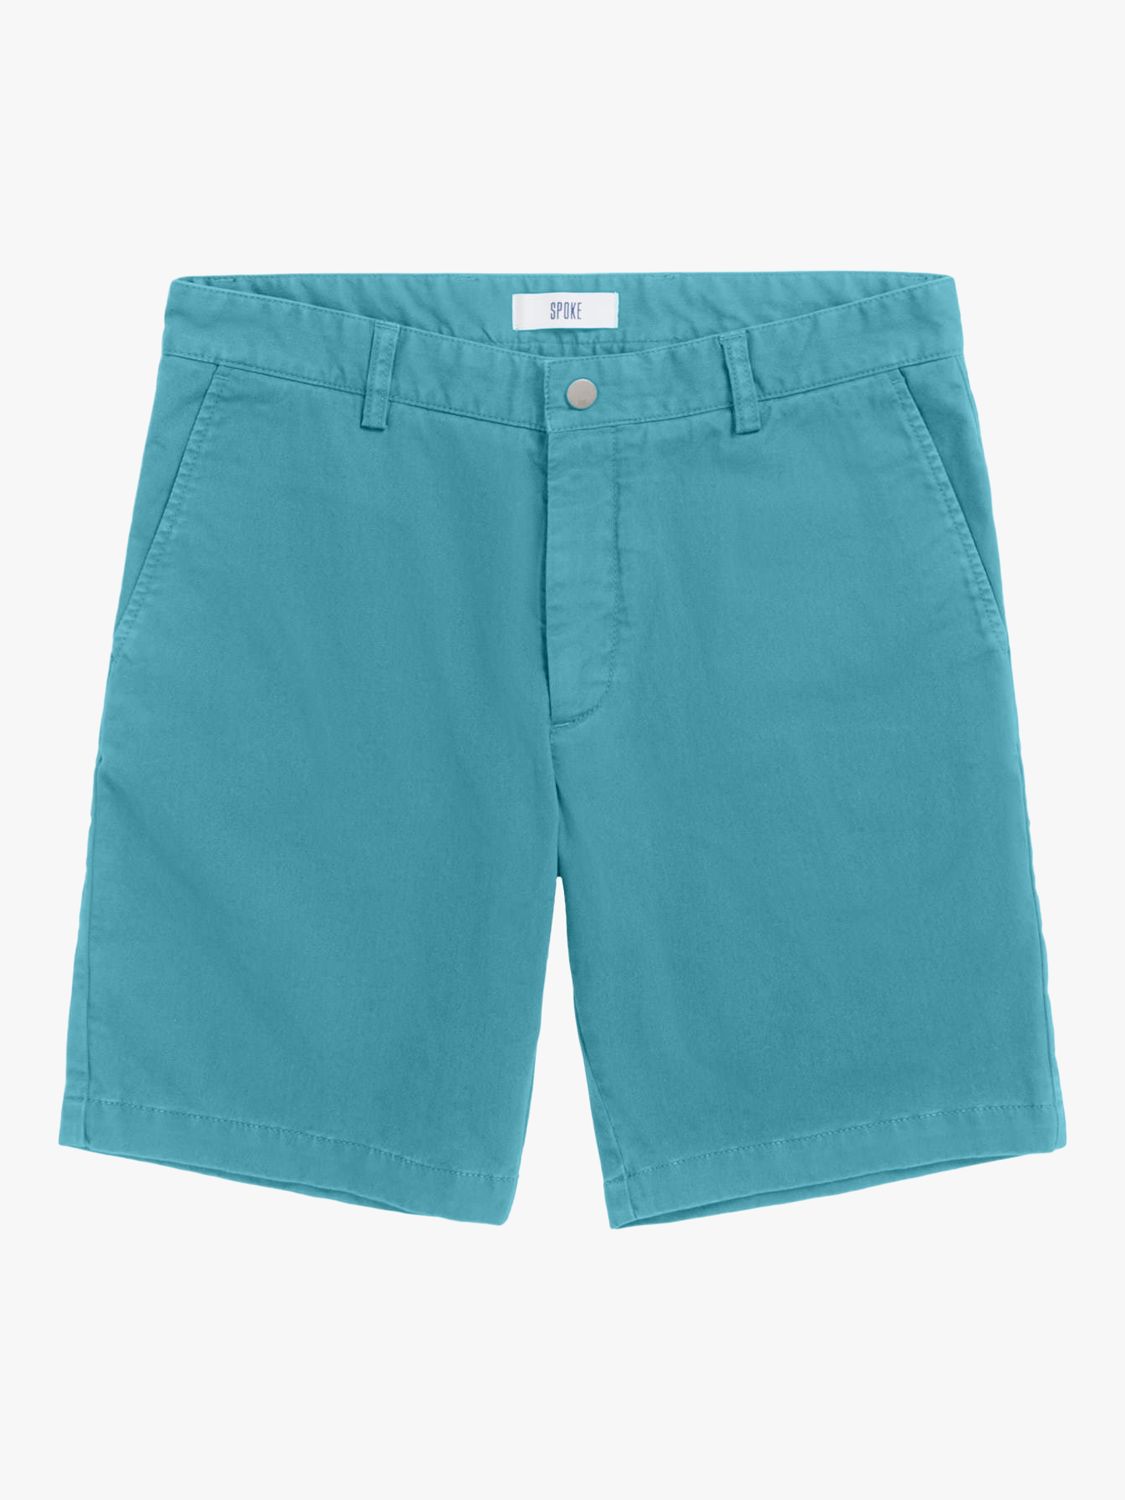 SPOKE Hero Slim Thigh Shorts, Lagoon, 40R